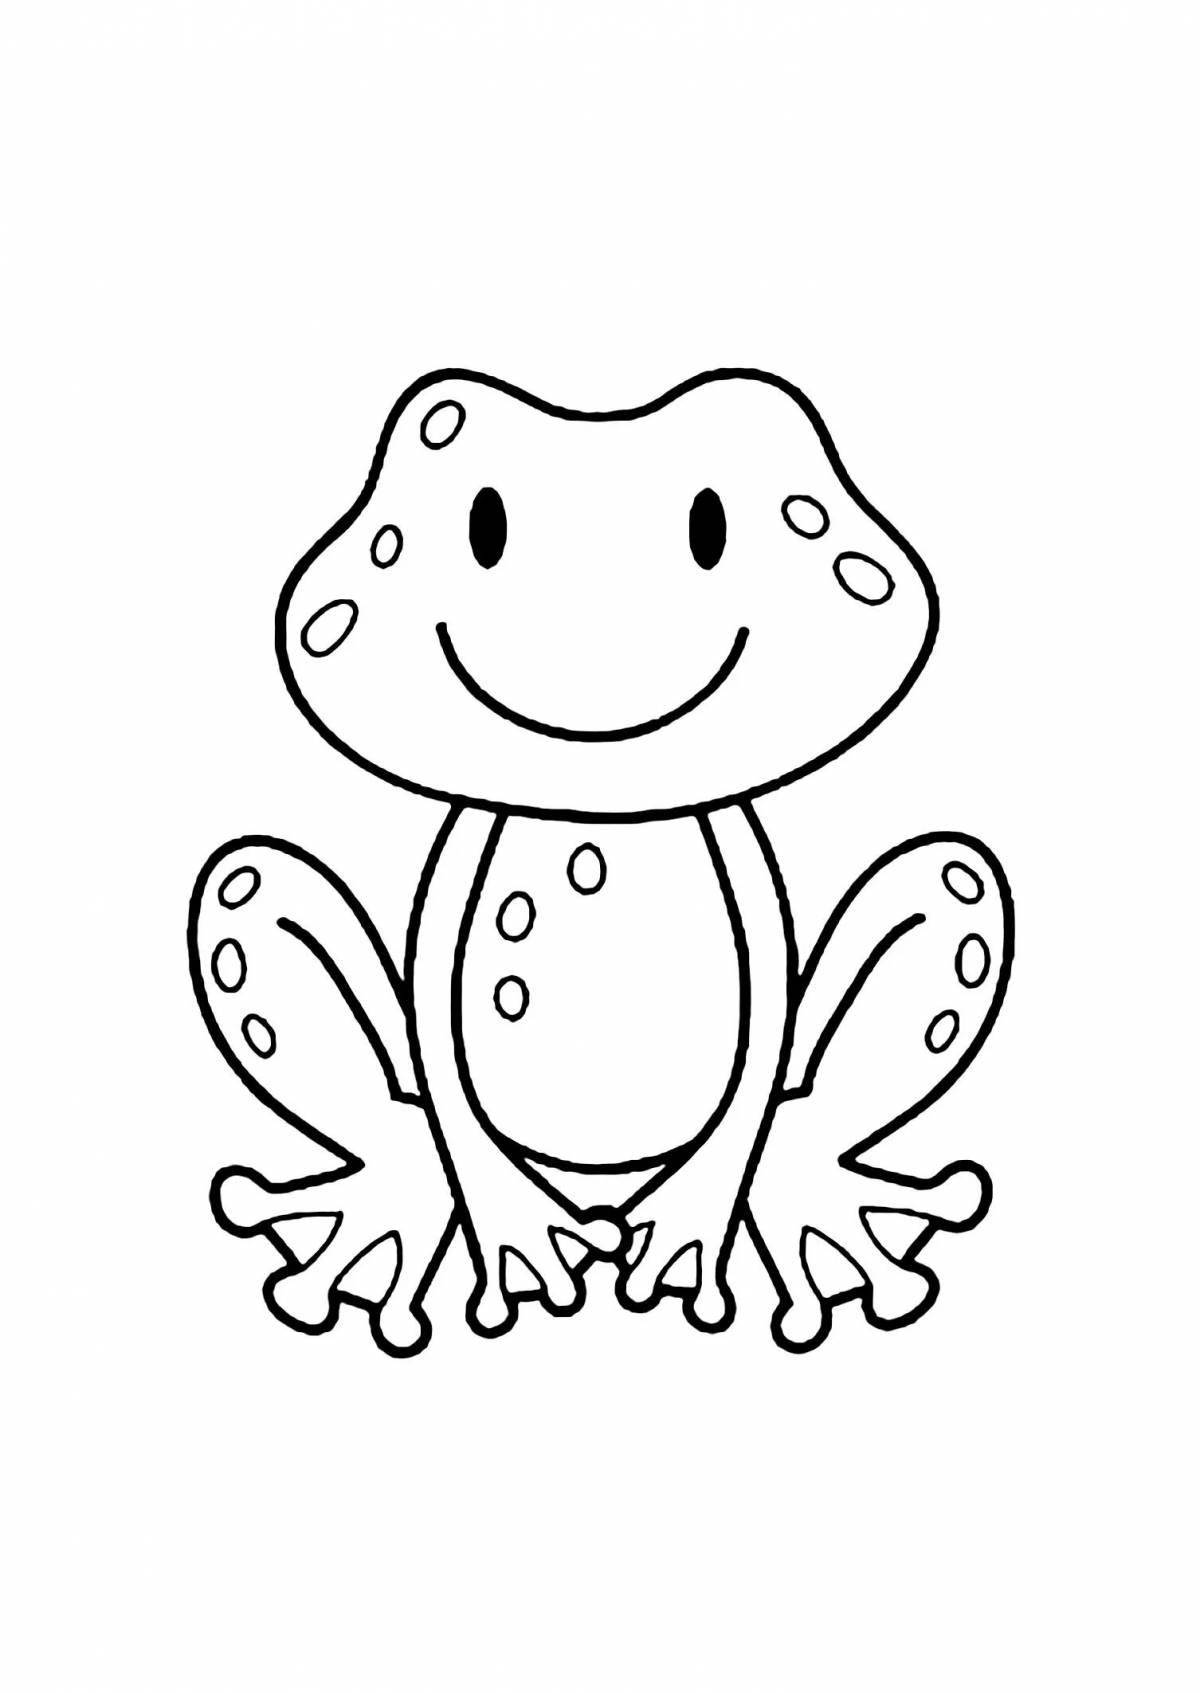 Joyful frog coloring